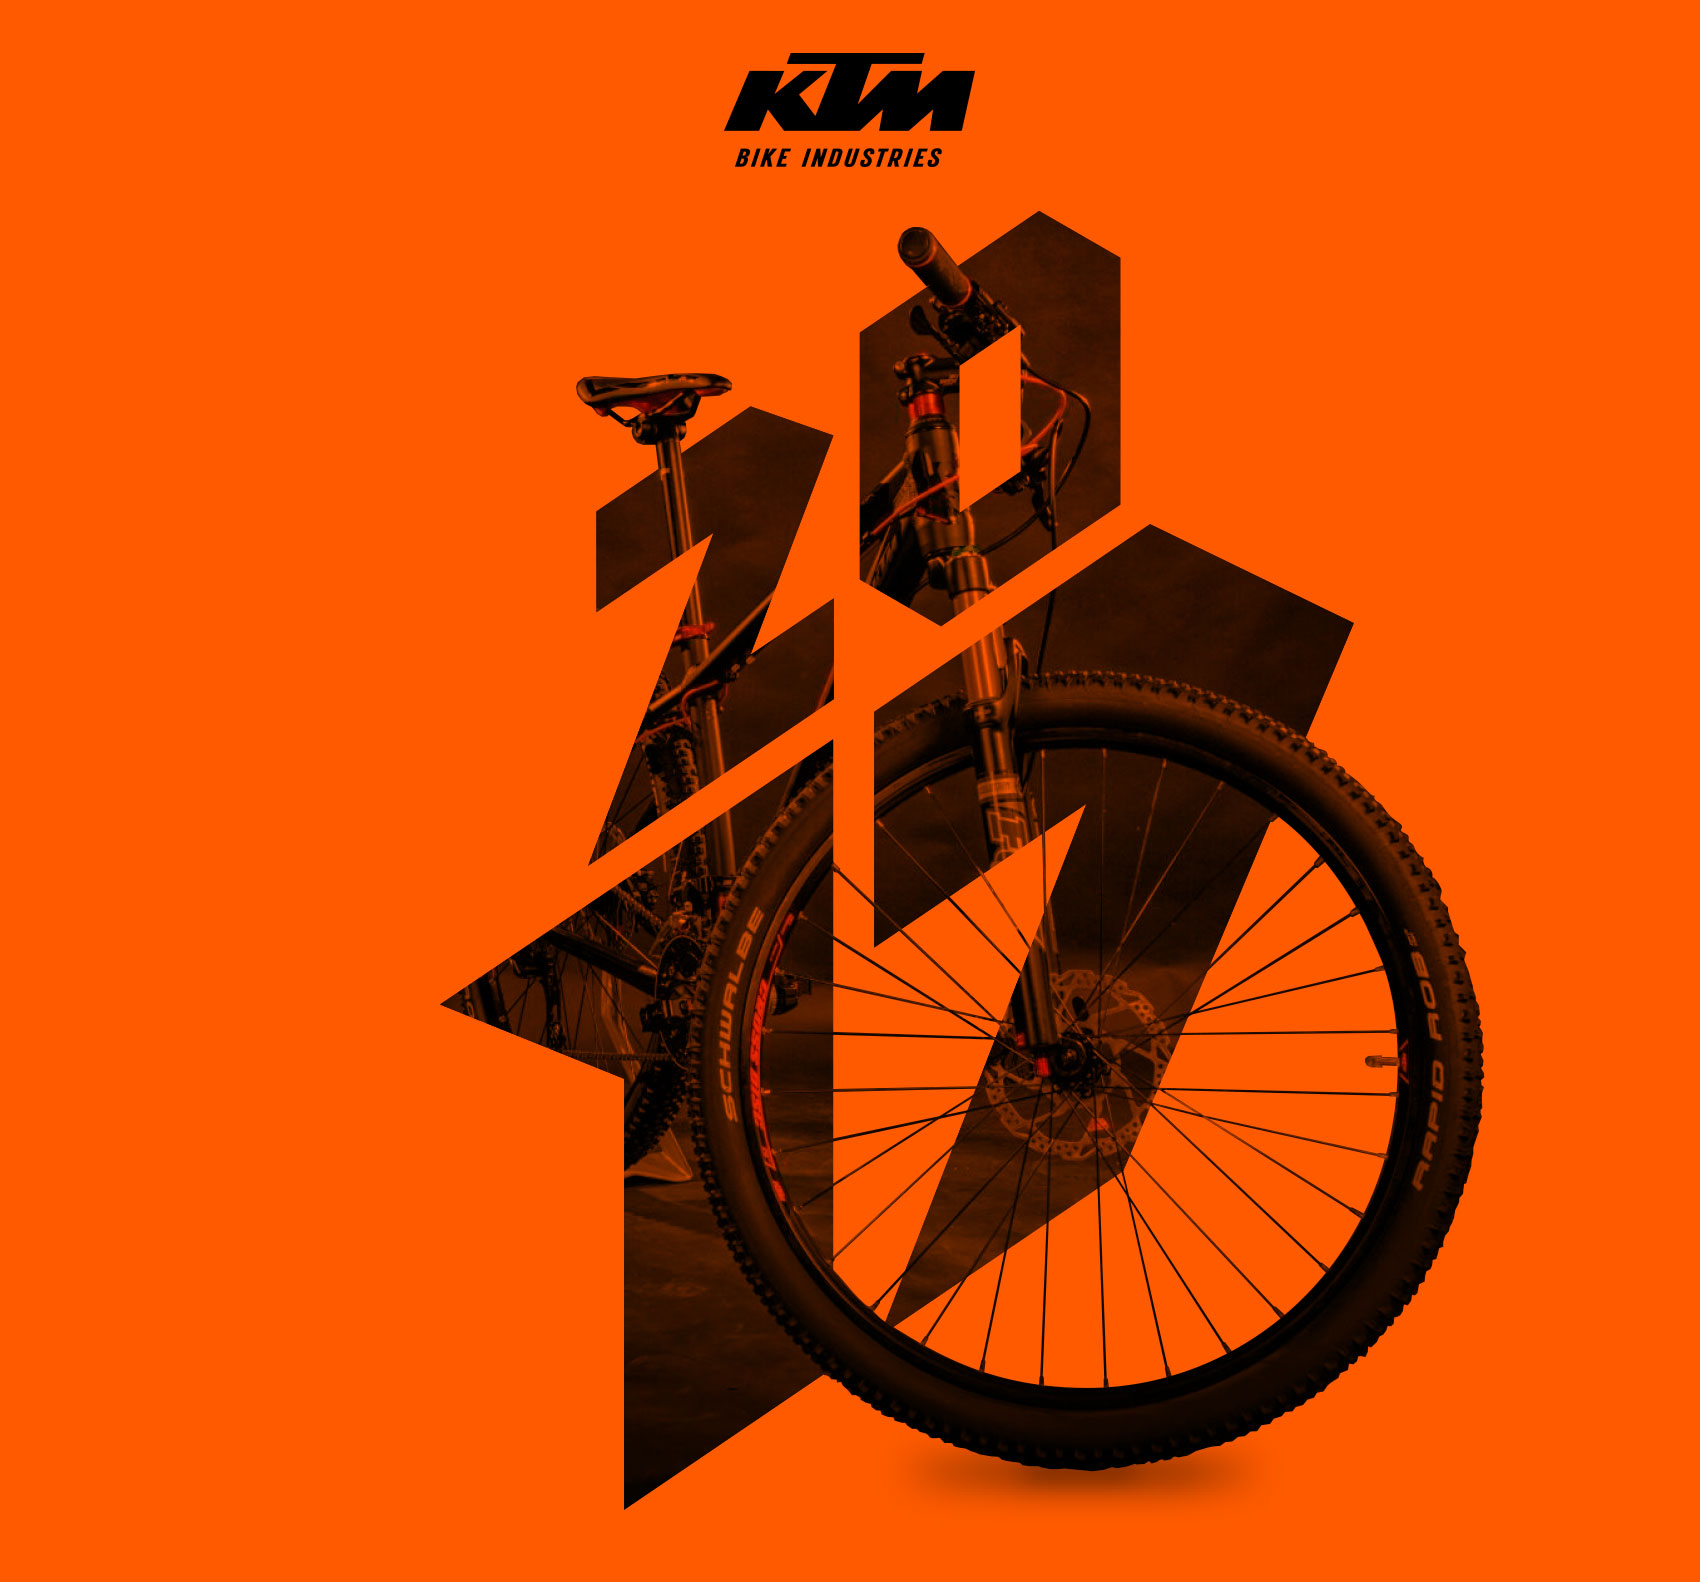 KTM Design by Groupe Dejour